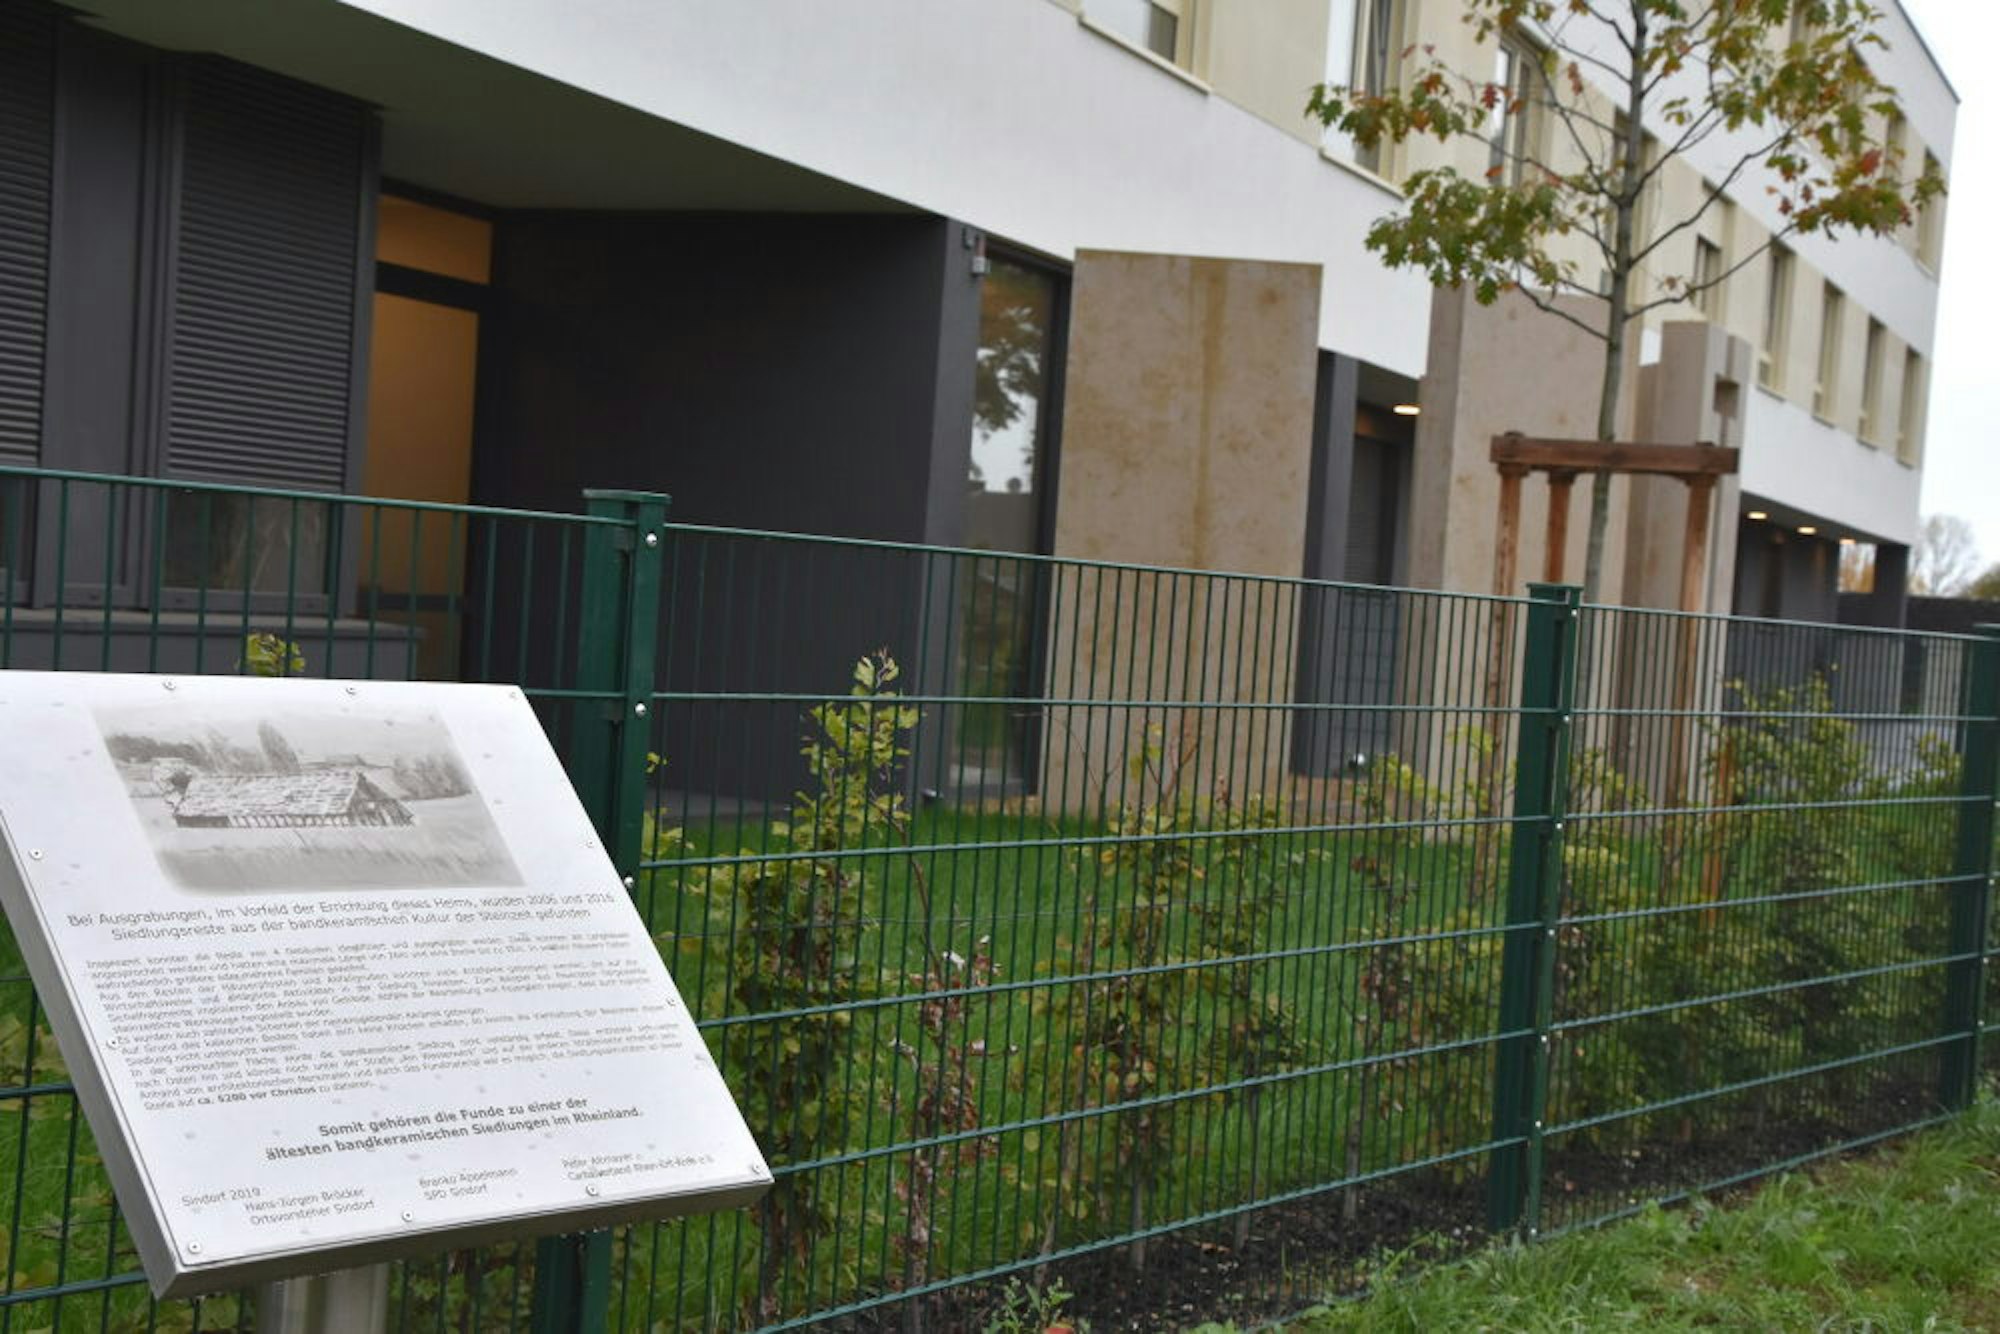 Am Seniorenheim St. Ulrich informiert eine Tafel über steinzeitliche Siedlungsreste, die beim Neubau des Heims gefunden wurden. Die offizielle Enthüllung ist für Donnerstag, 29. Oktober, geplant.